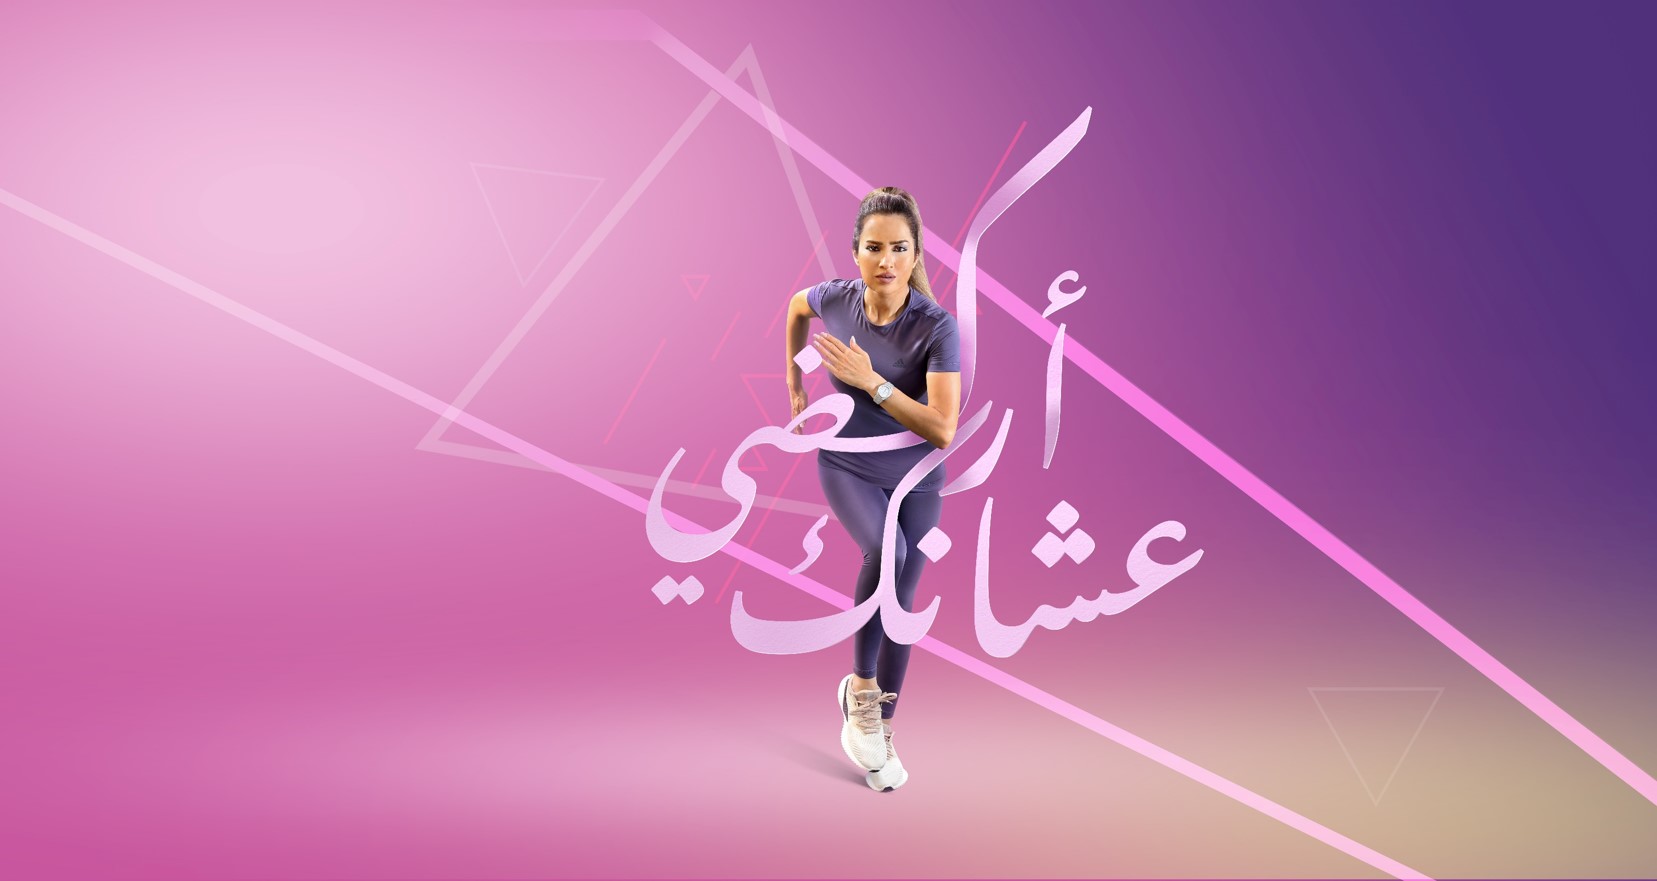 تحت رعاية سمو الأميرة دانا فراس وضمن شعار &إركضي عشانك&